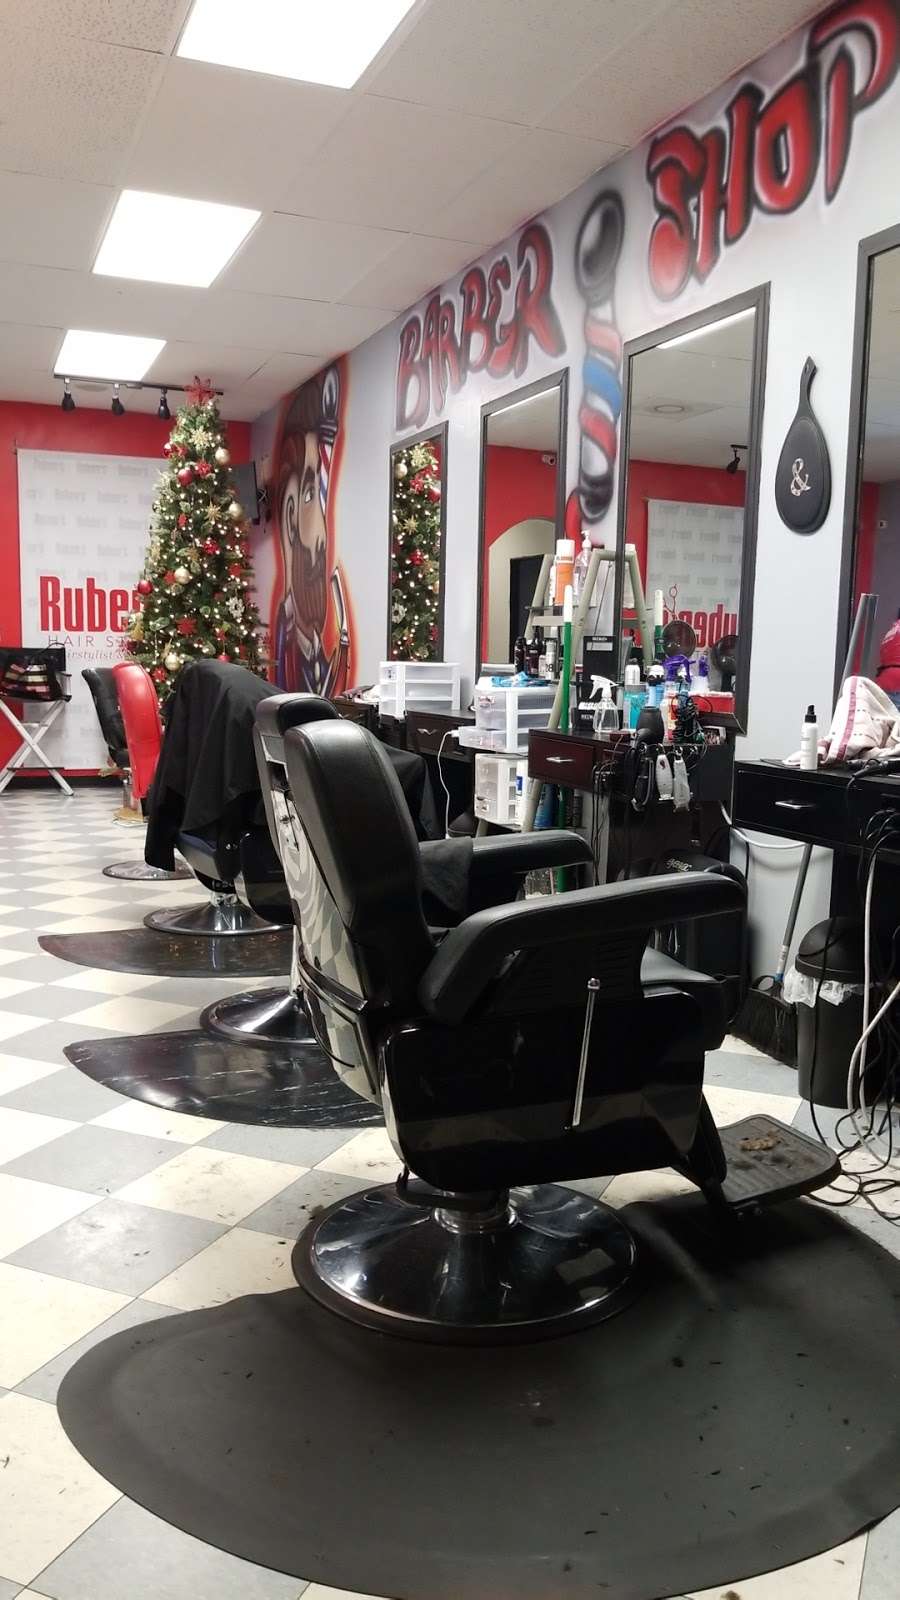 Rubens Hair Studio - Barberos y Estilistas | 3133 Peoria St unit 205, Aurora, CO 80010 | Phone: (720) 638-0764